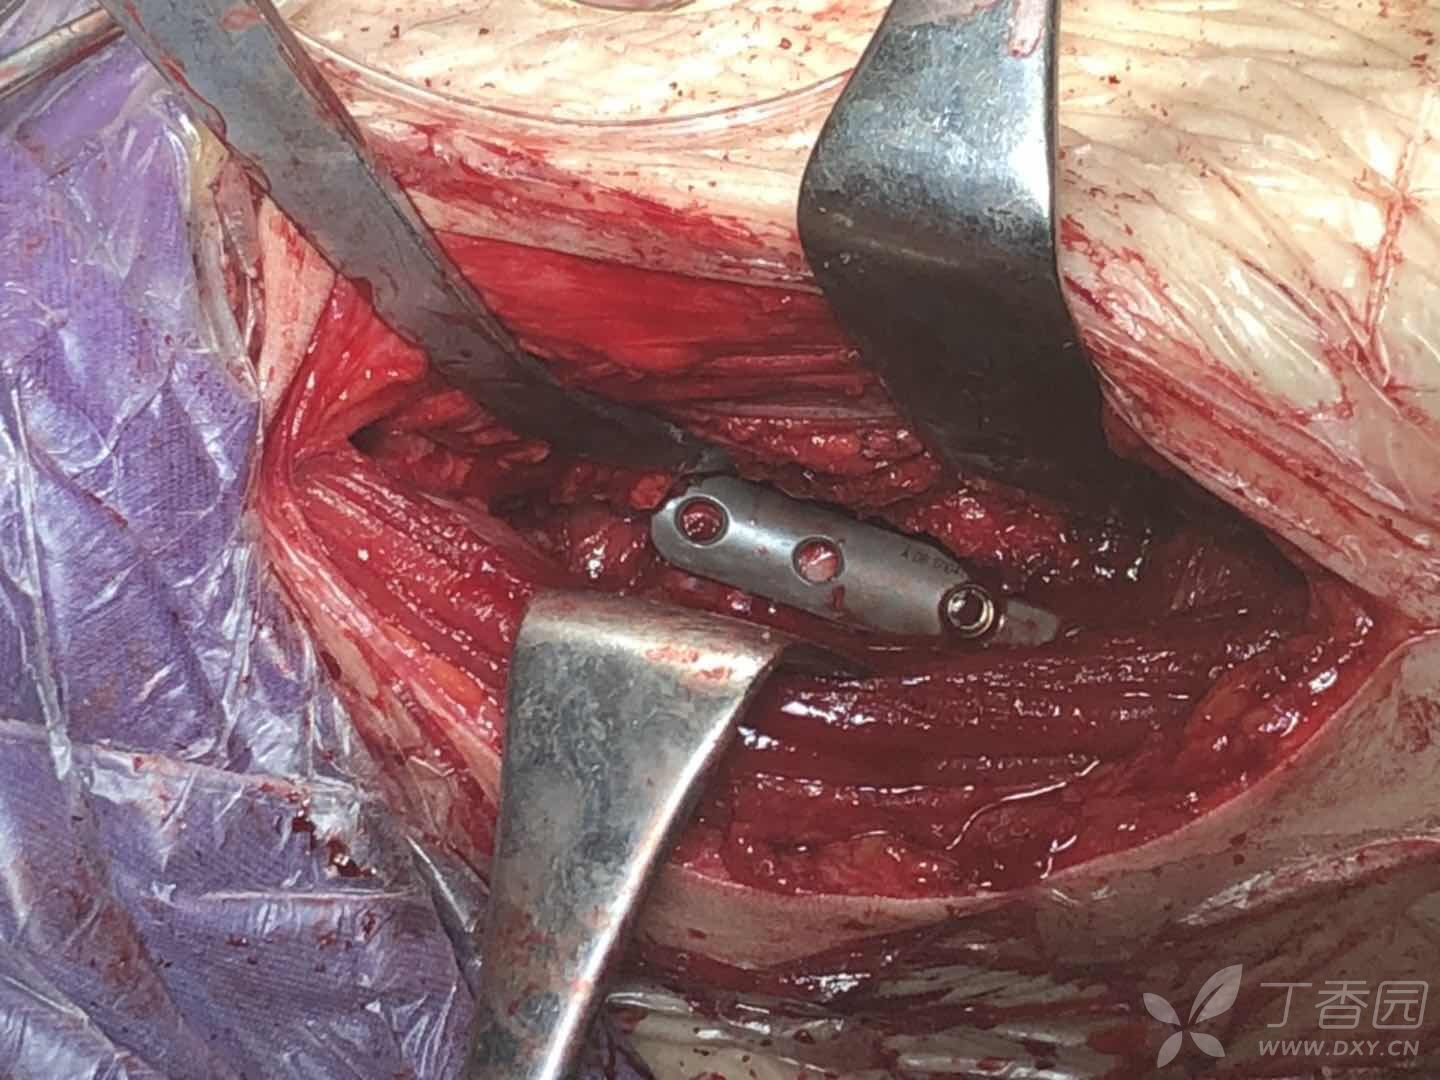 新年第一台手术:股骨颈骨折闭合复内固定 [病例帖]